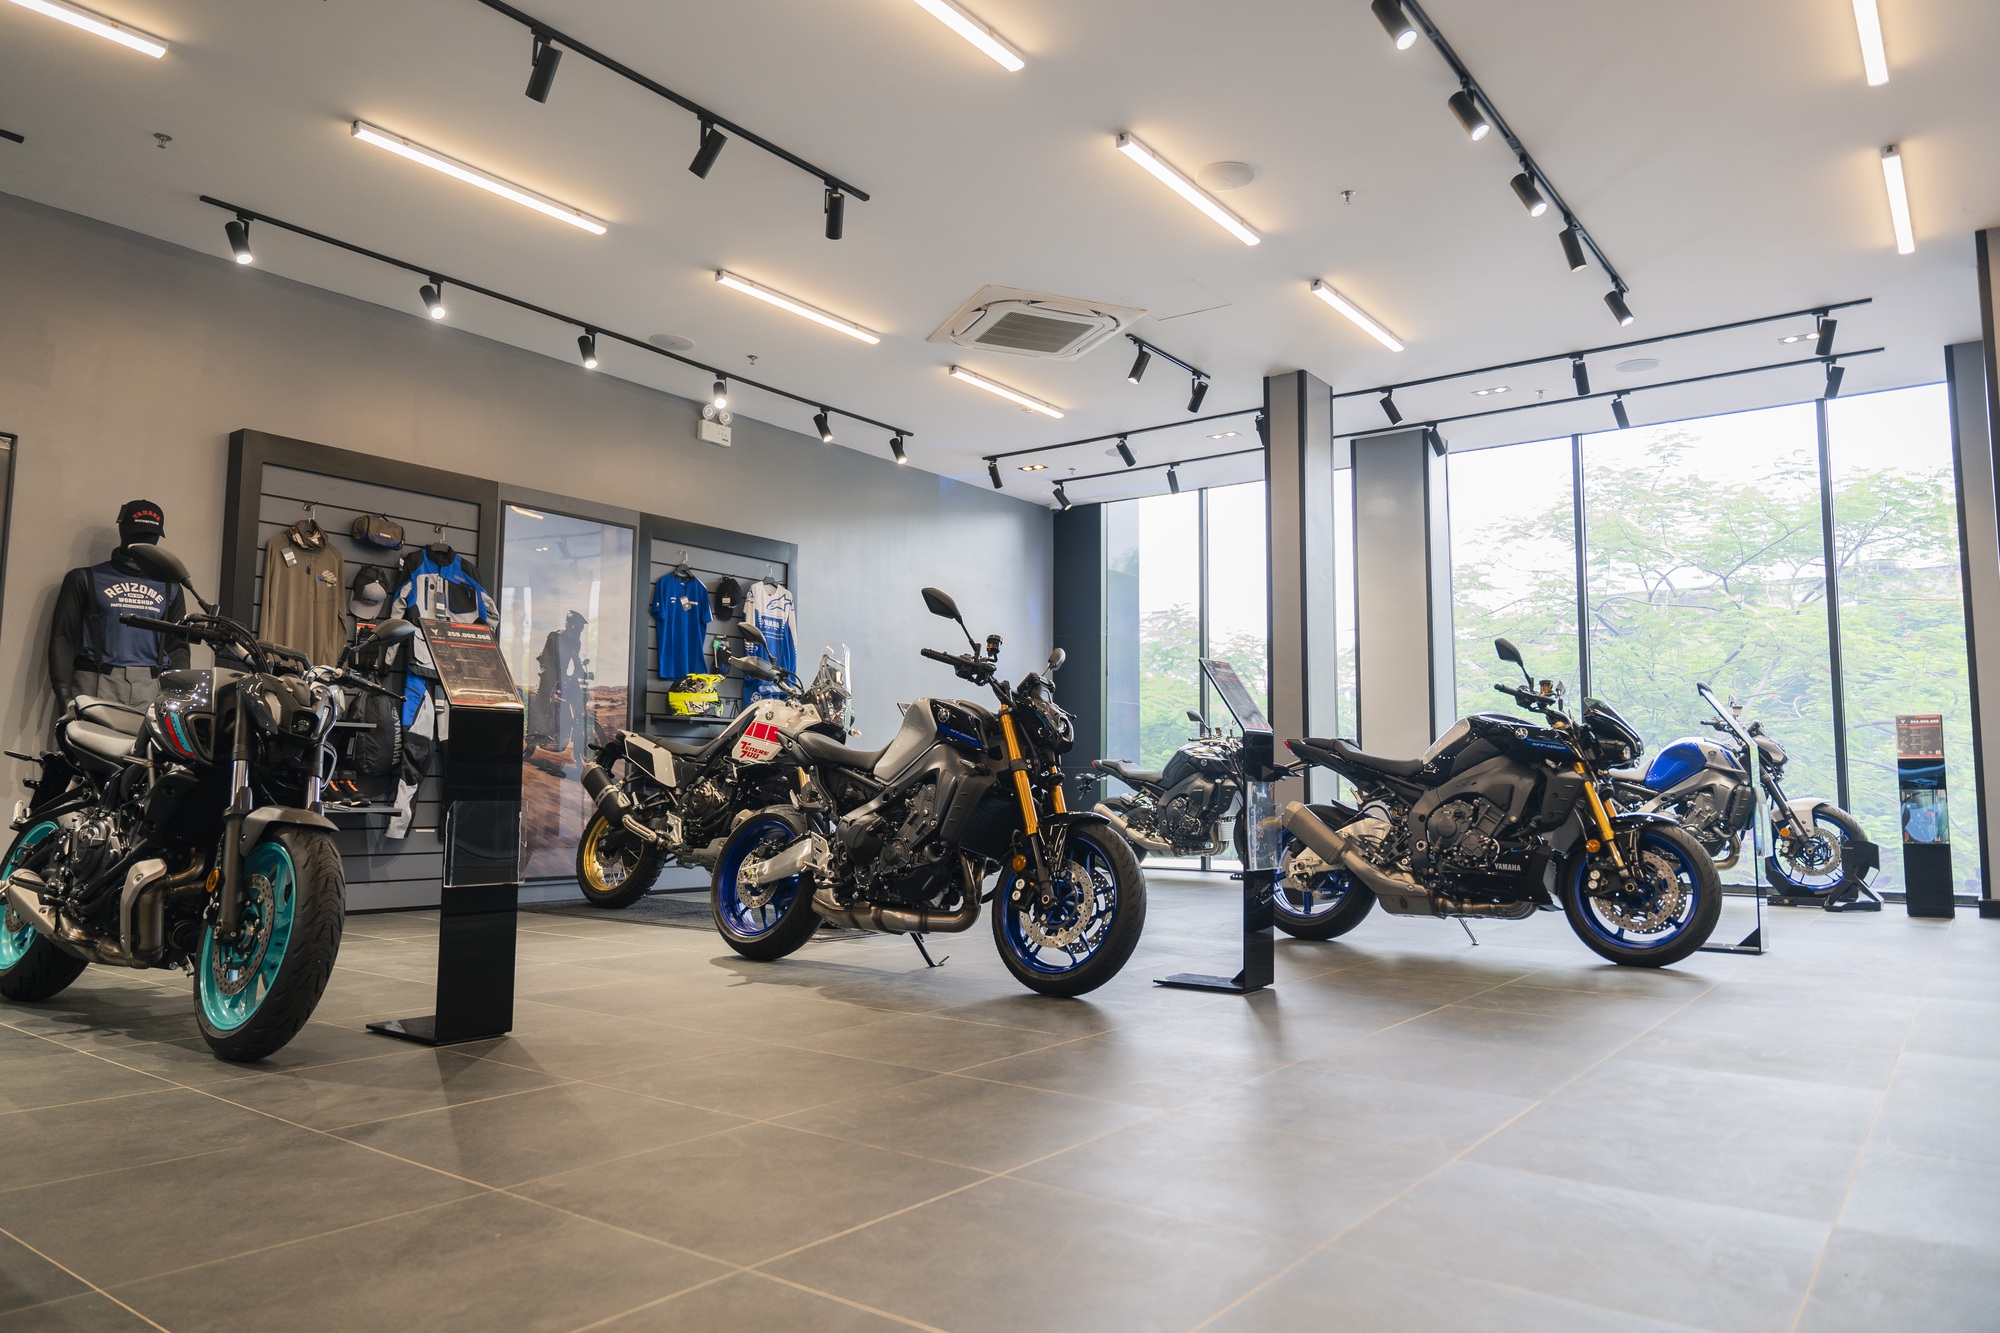 Yamaha khai trương showroom phân khối lớn đầu tiên tại miền Bắc: Rộng 900 m2, có xưởng dịch vụ lớn nhất miền Bắc - Ảnh 1.